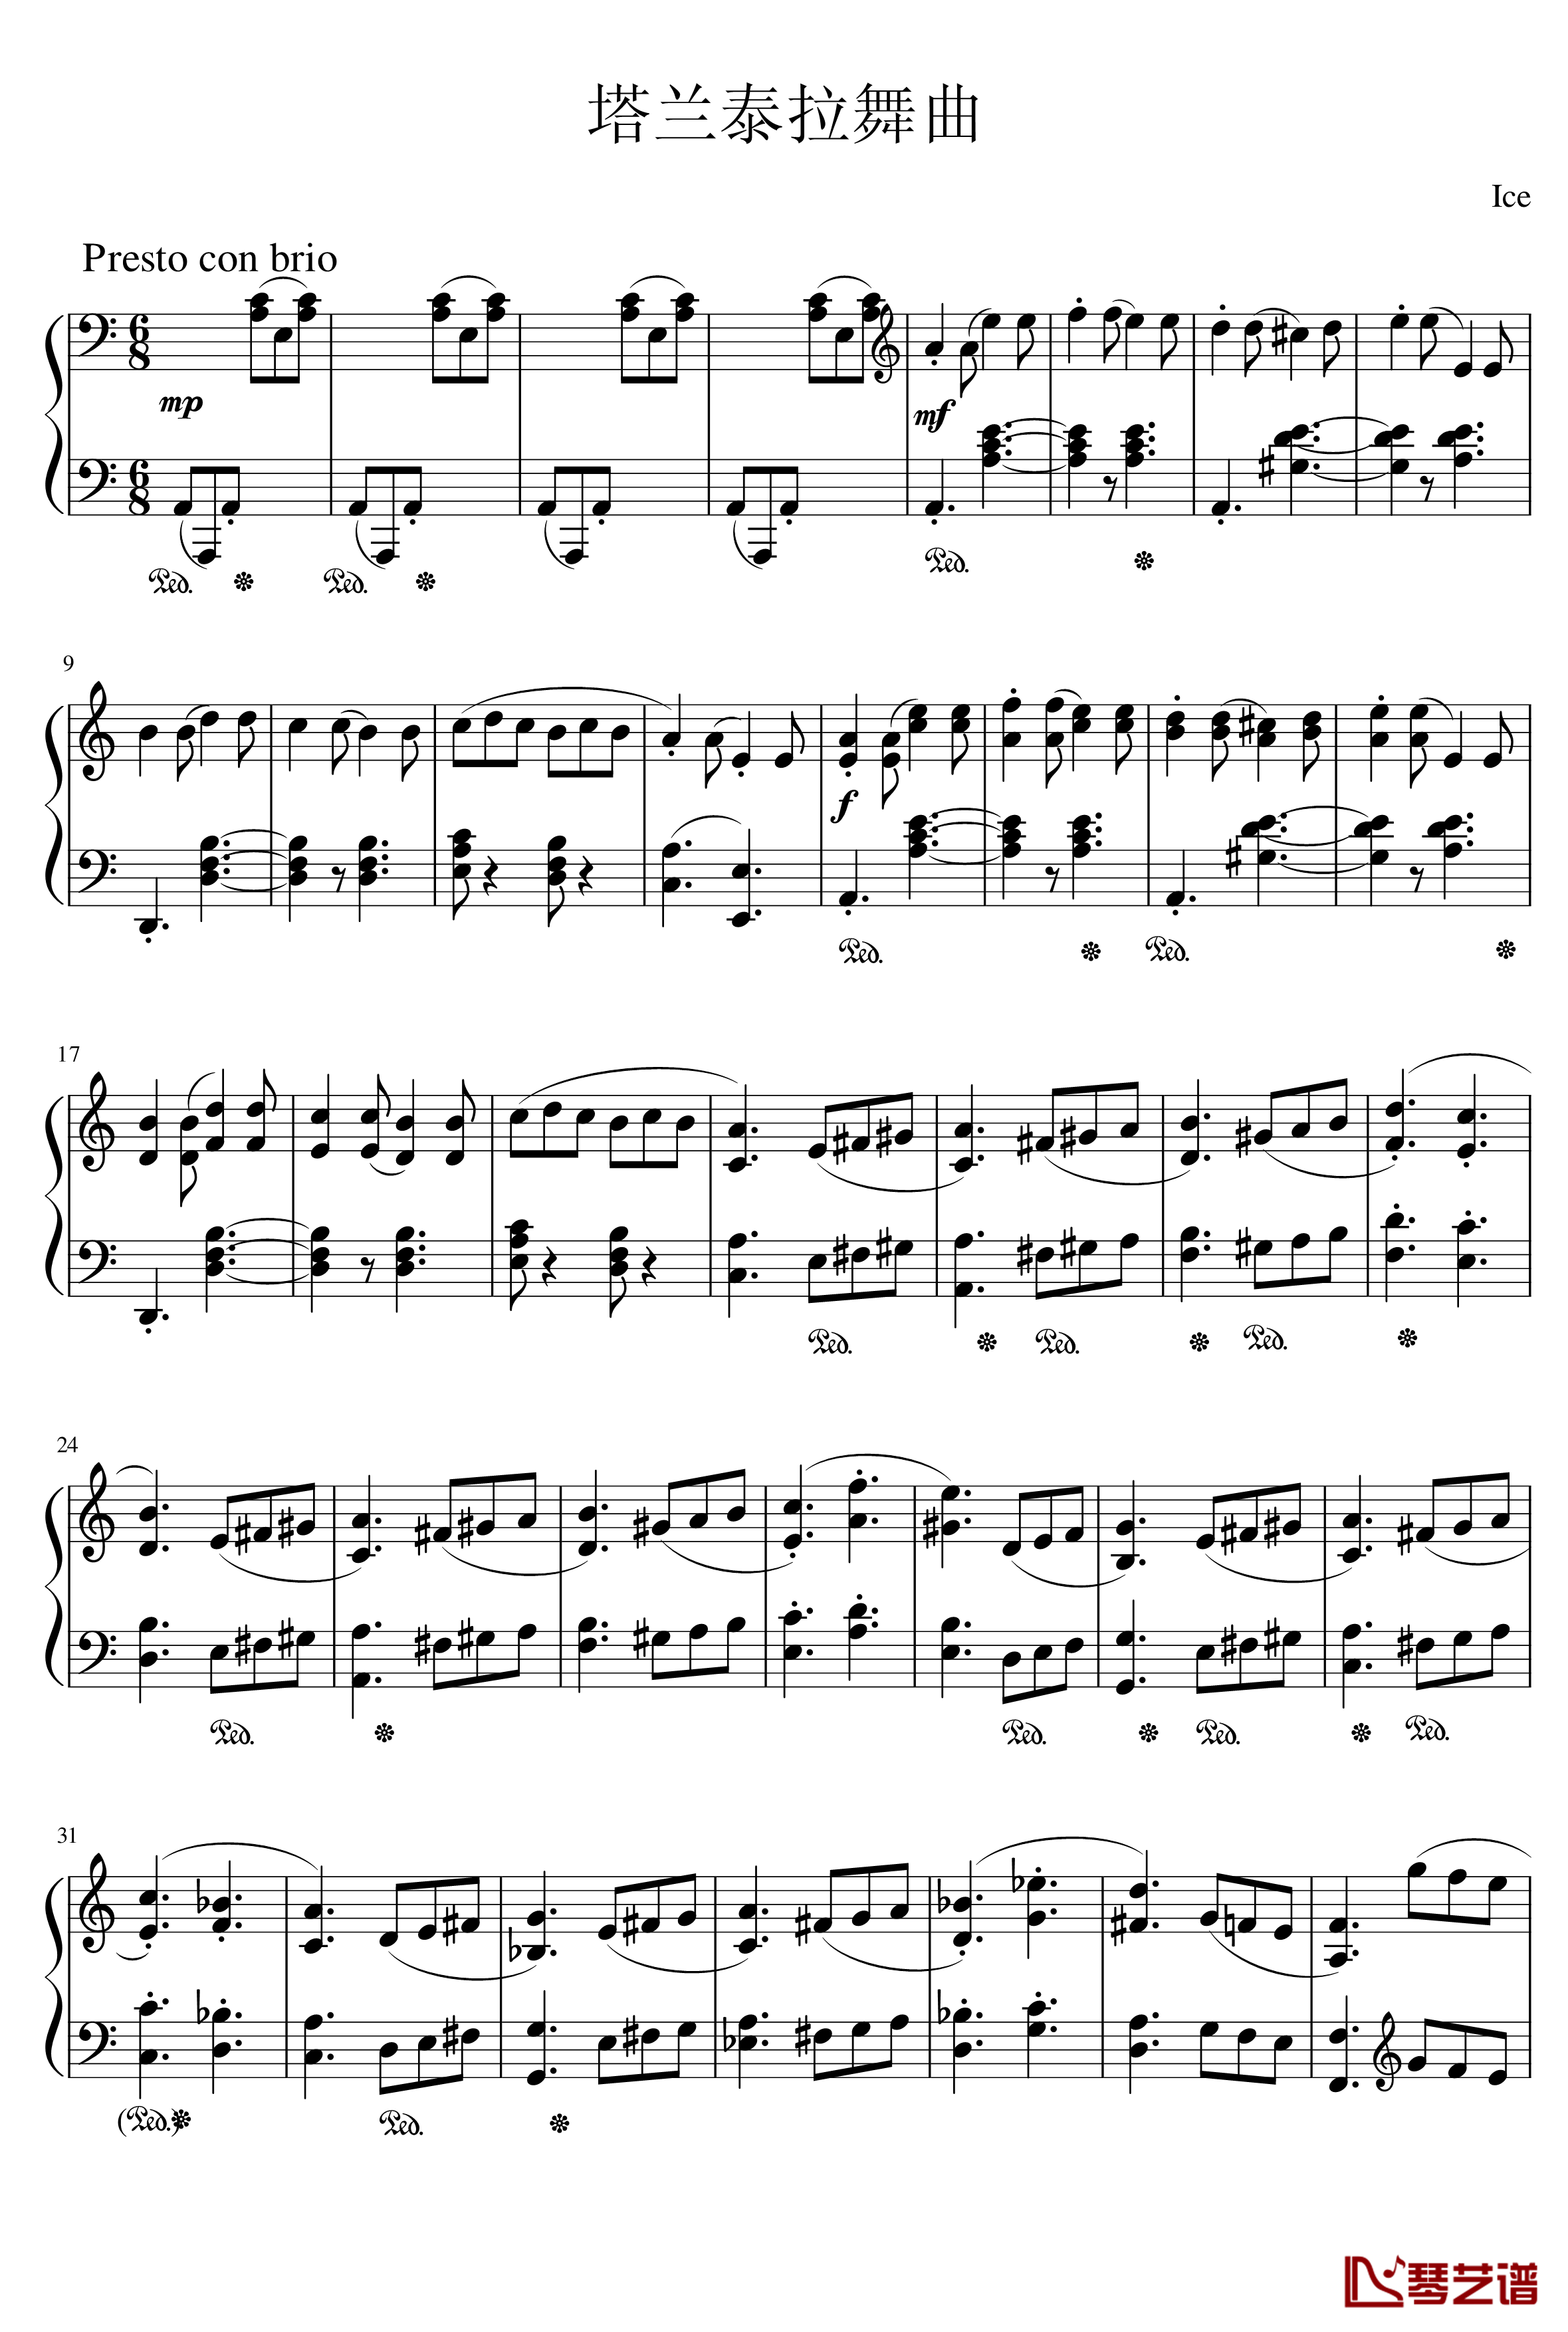 塔兰泰拉舞曲钢琴谱-Ice-KUN1